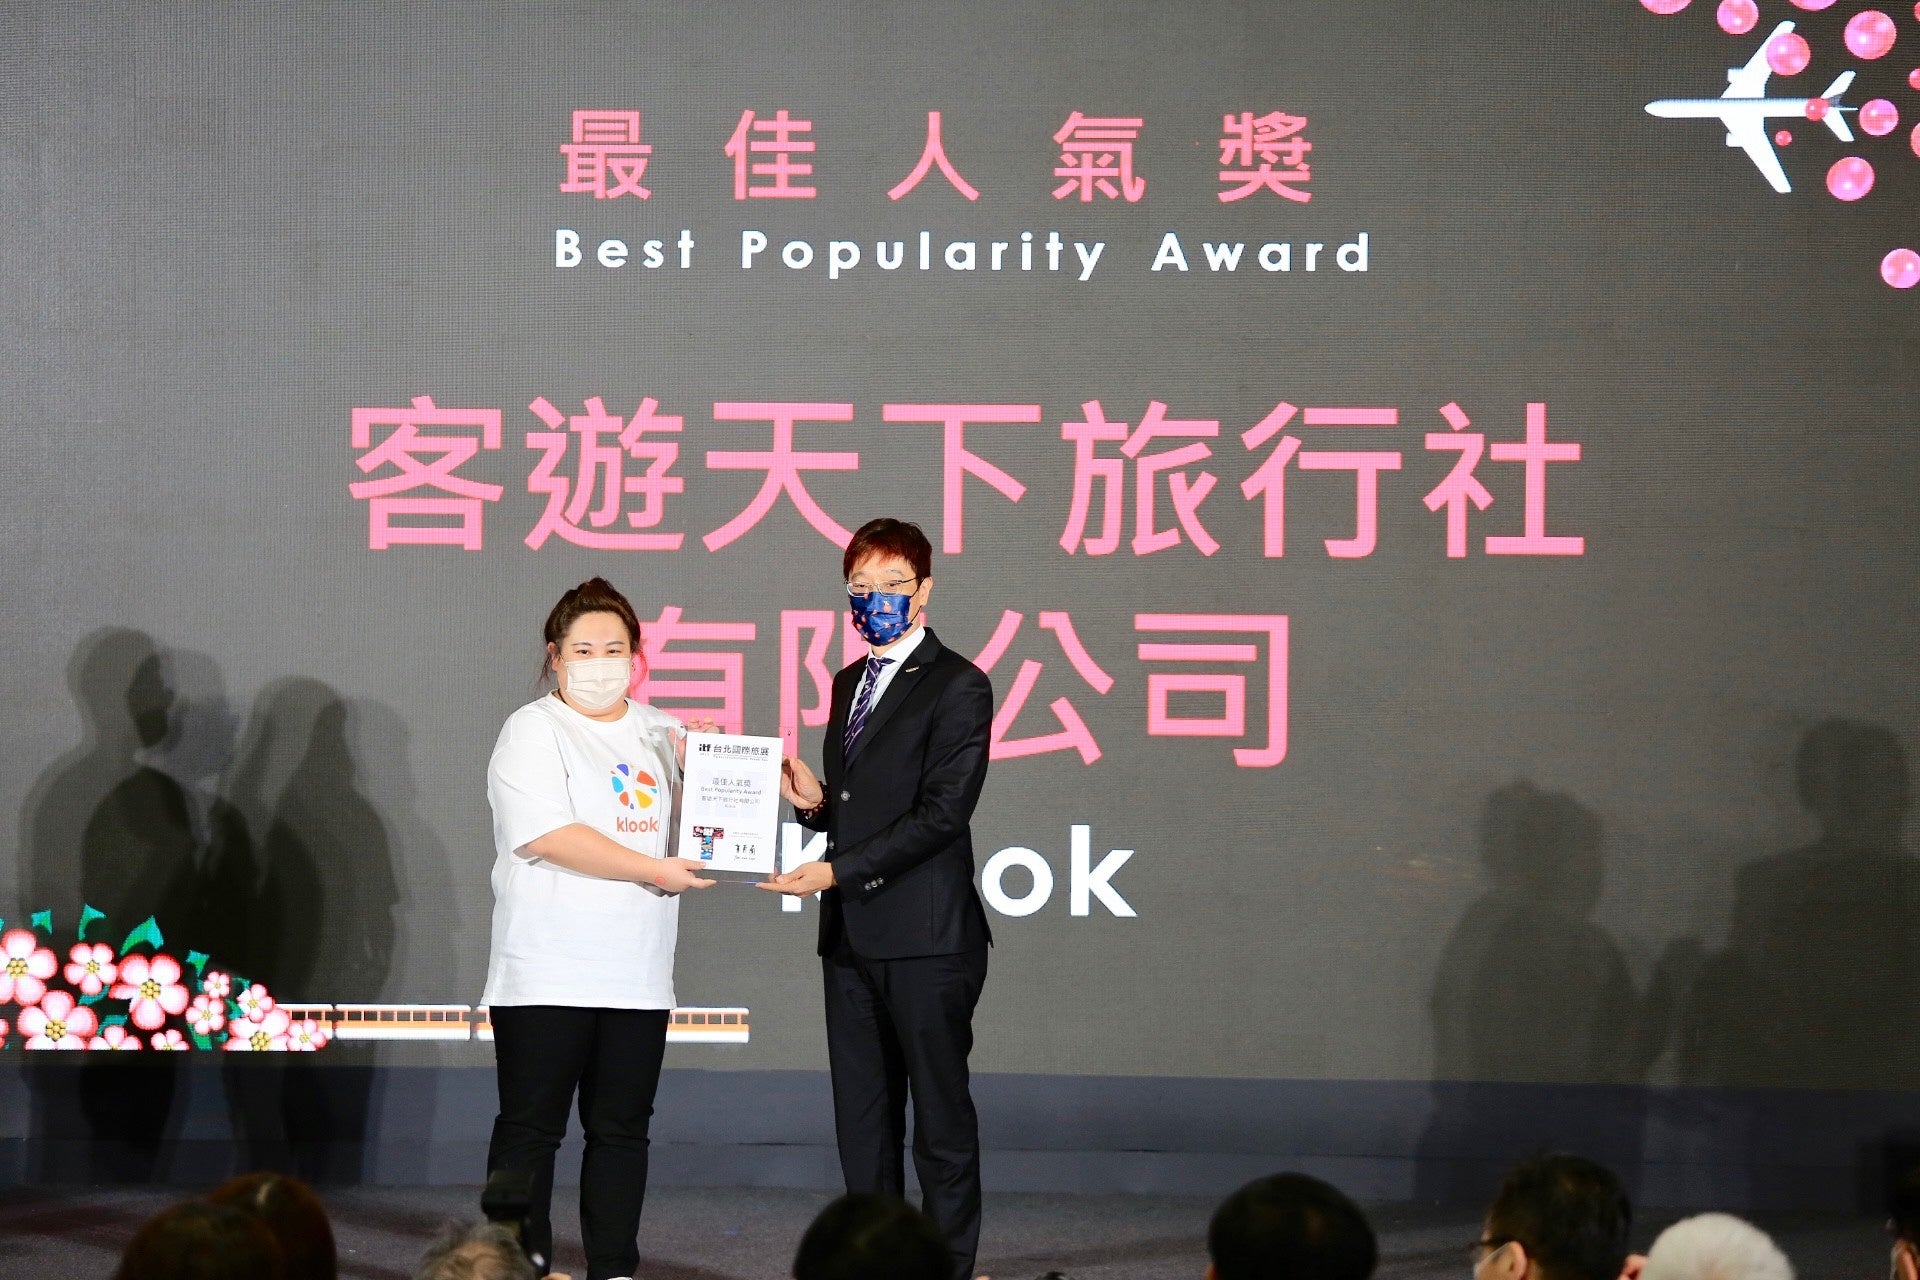 最も人気だった展示ブースの出展企業に贈られる「ベストポピュラリティアワード(Best Popularity Award)」をKlookが受賞